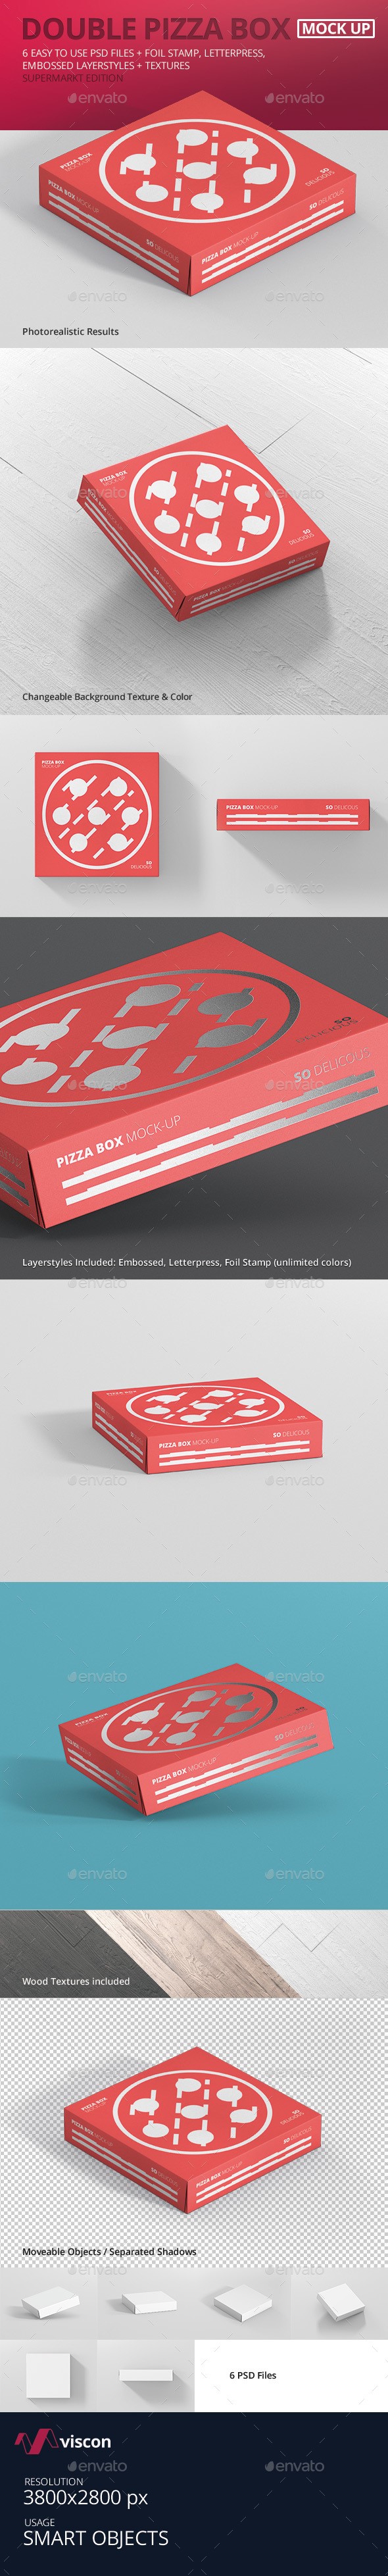 موکاپ جعبه پیتزا - نسخه جعبه دوبل سوپر مارکت